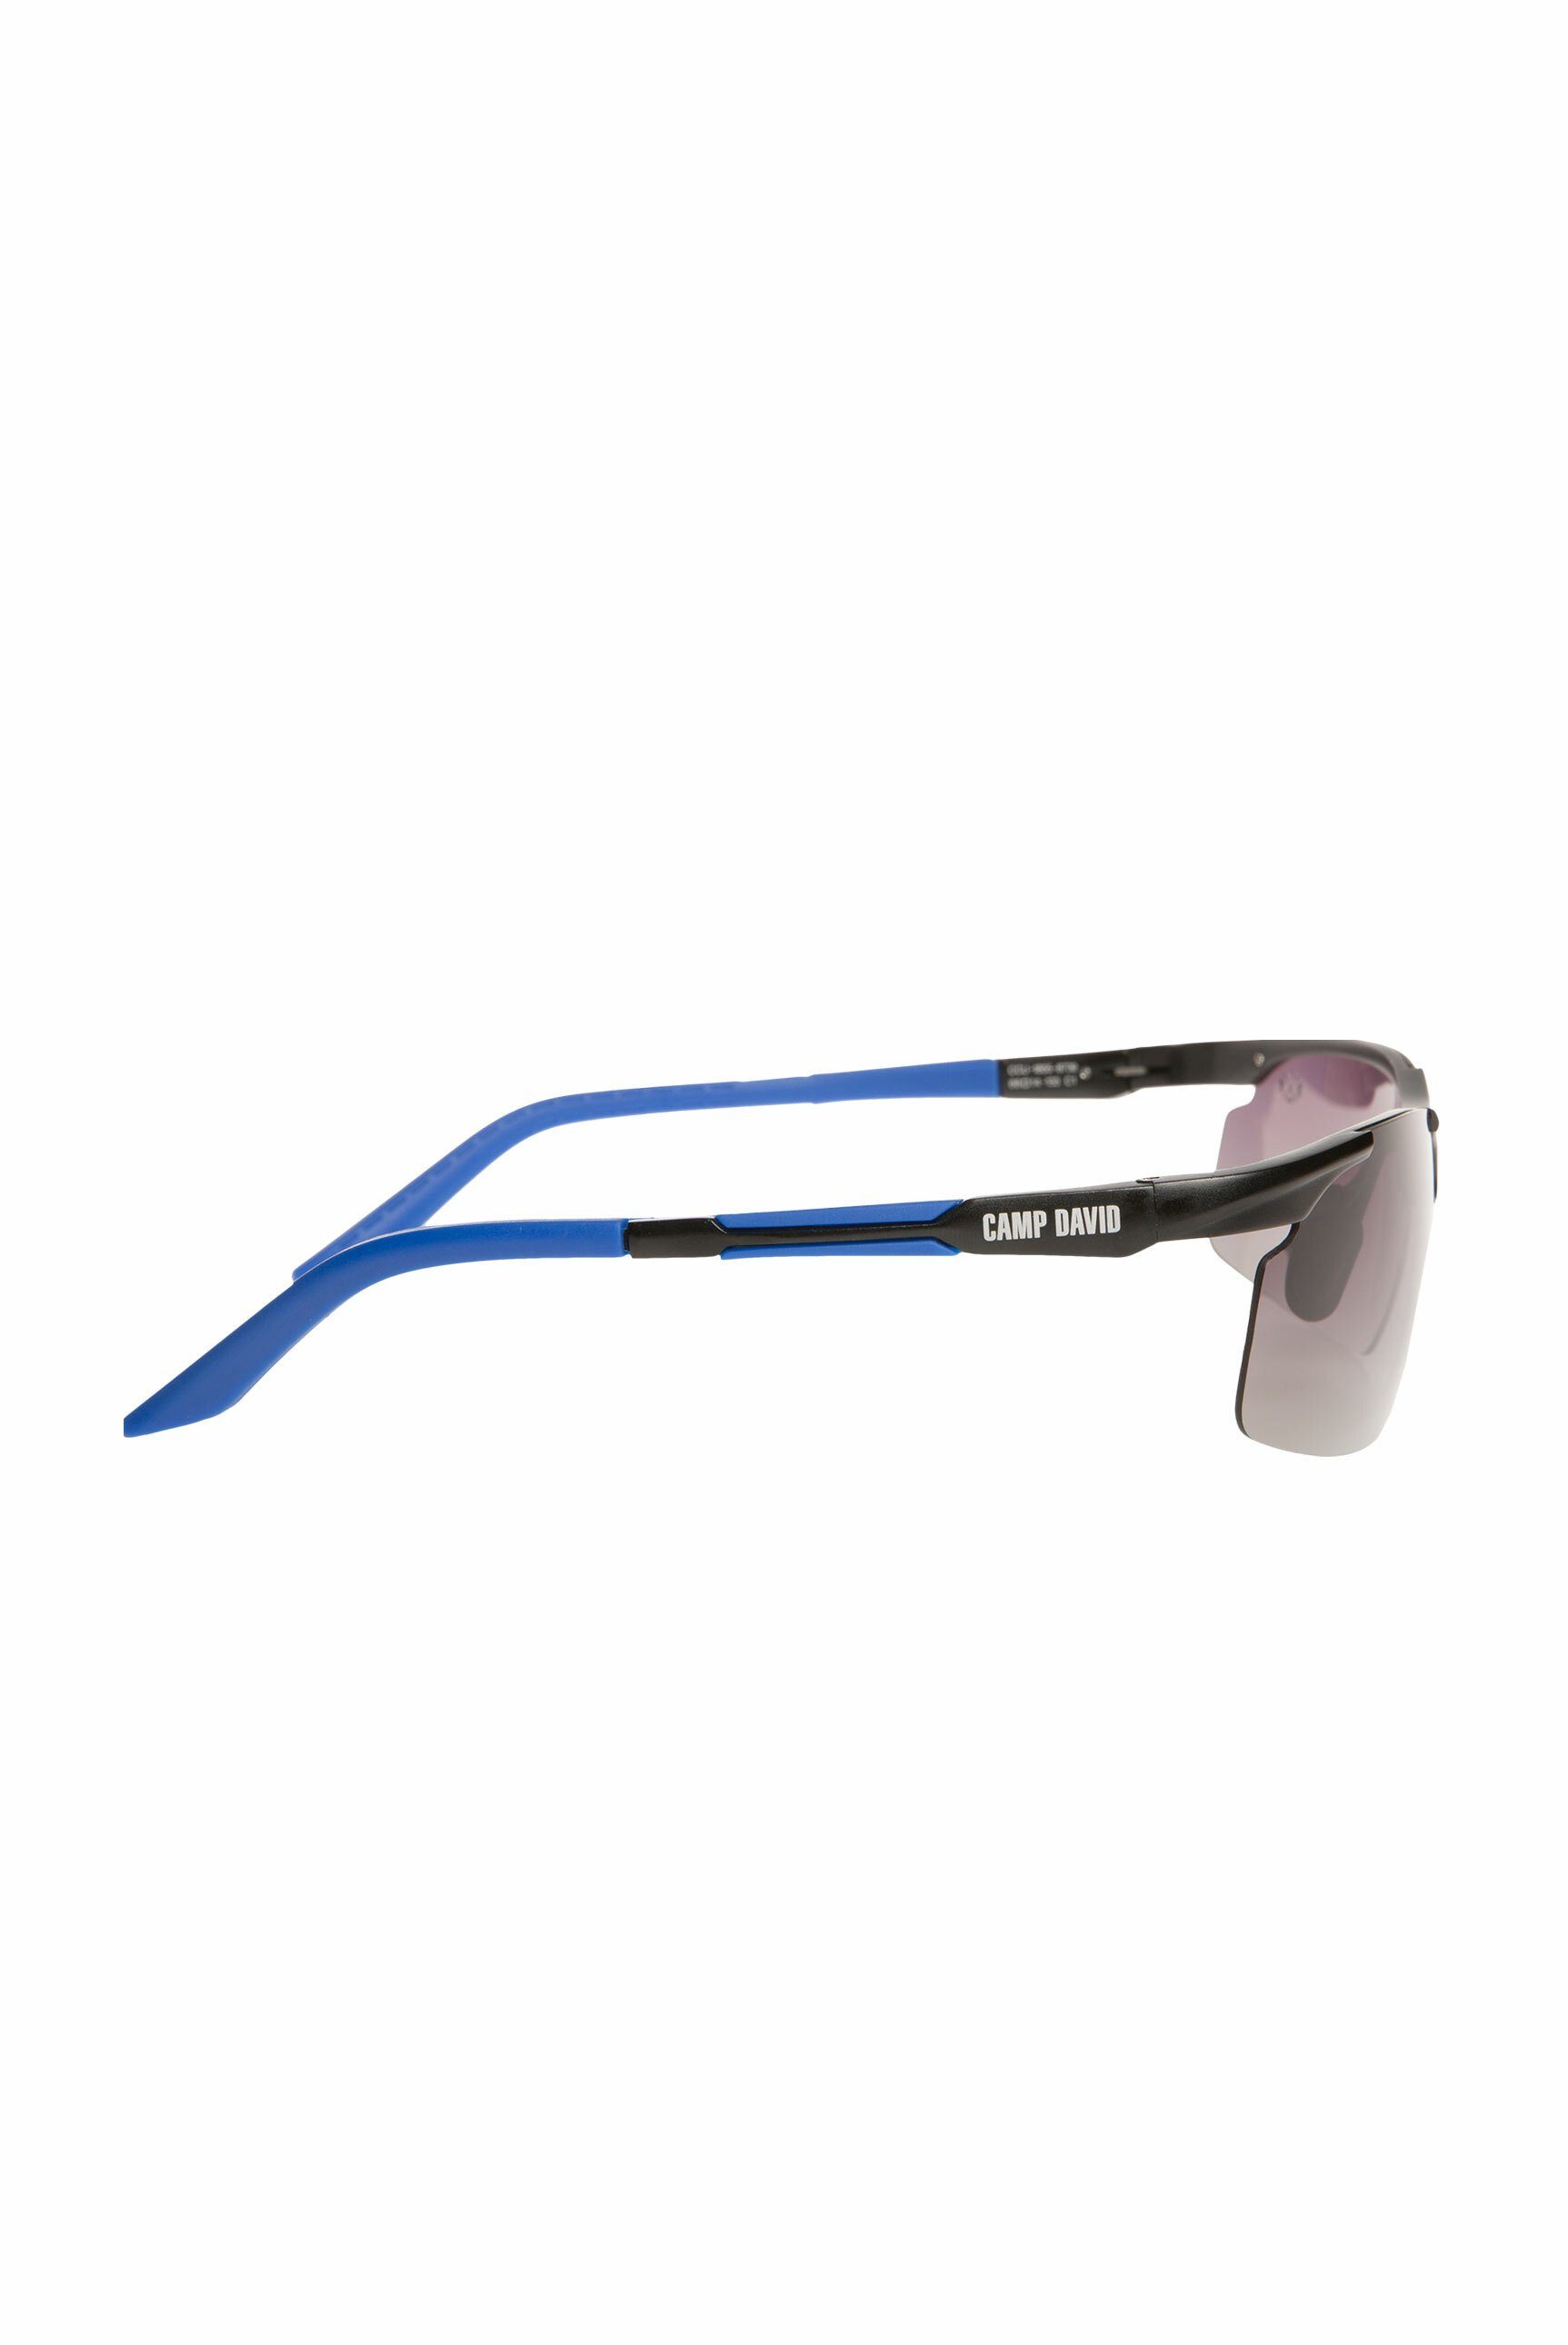 CAMP DAVID schwarz-blau Sonnenbrille 15 17 15 x cm) x (ca